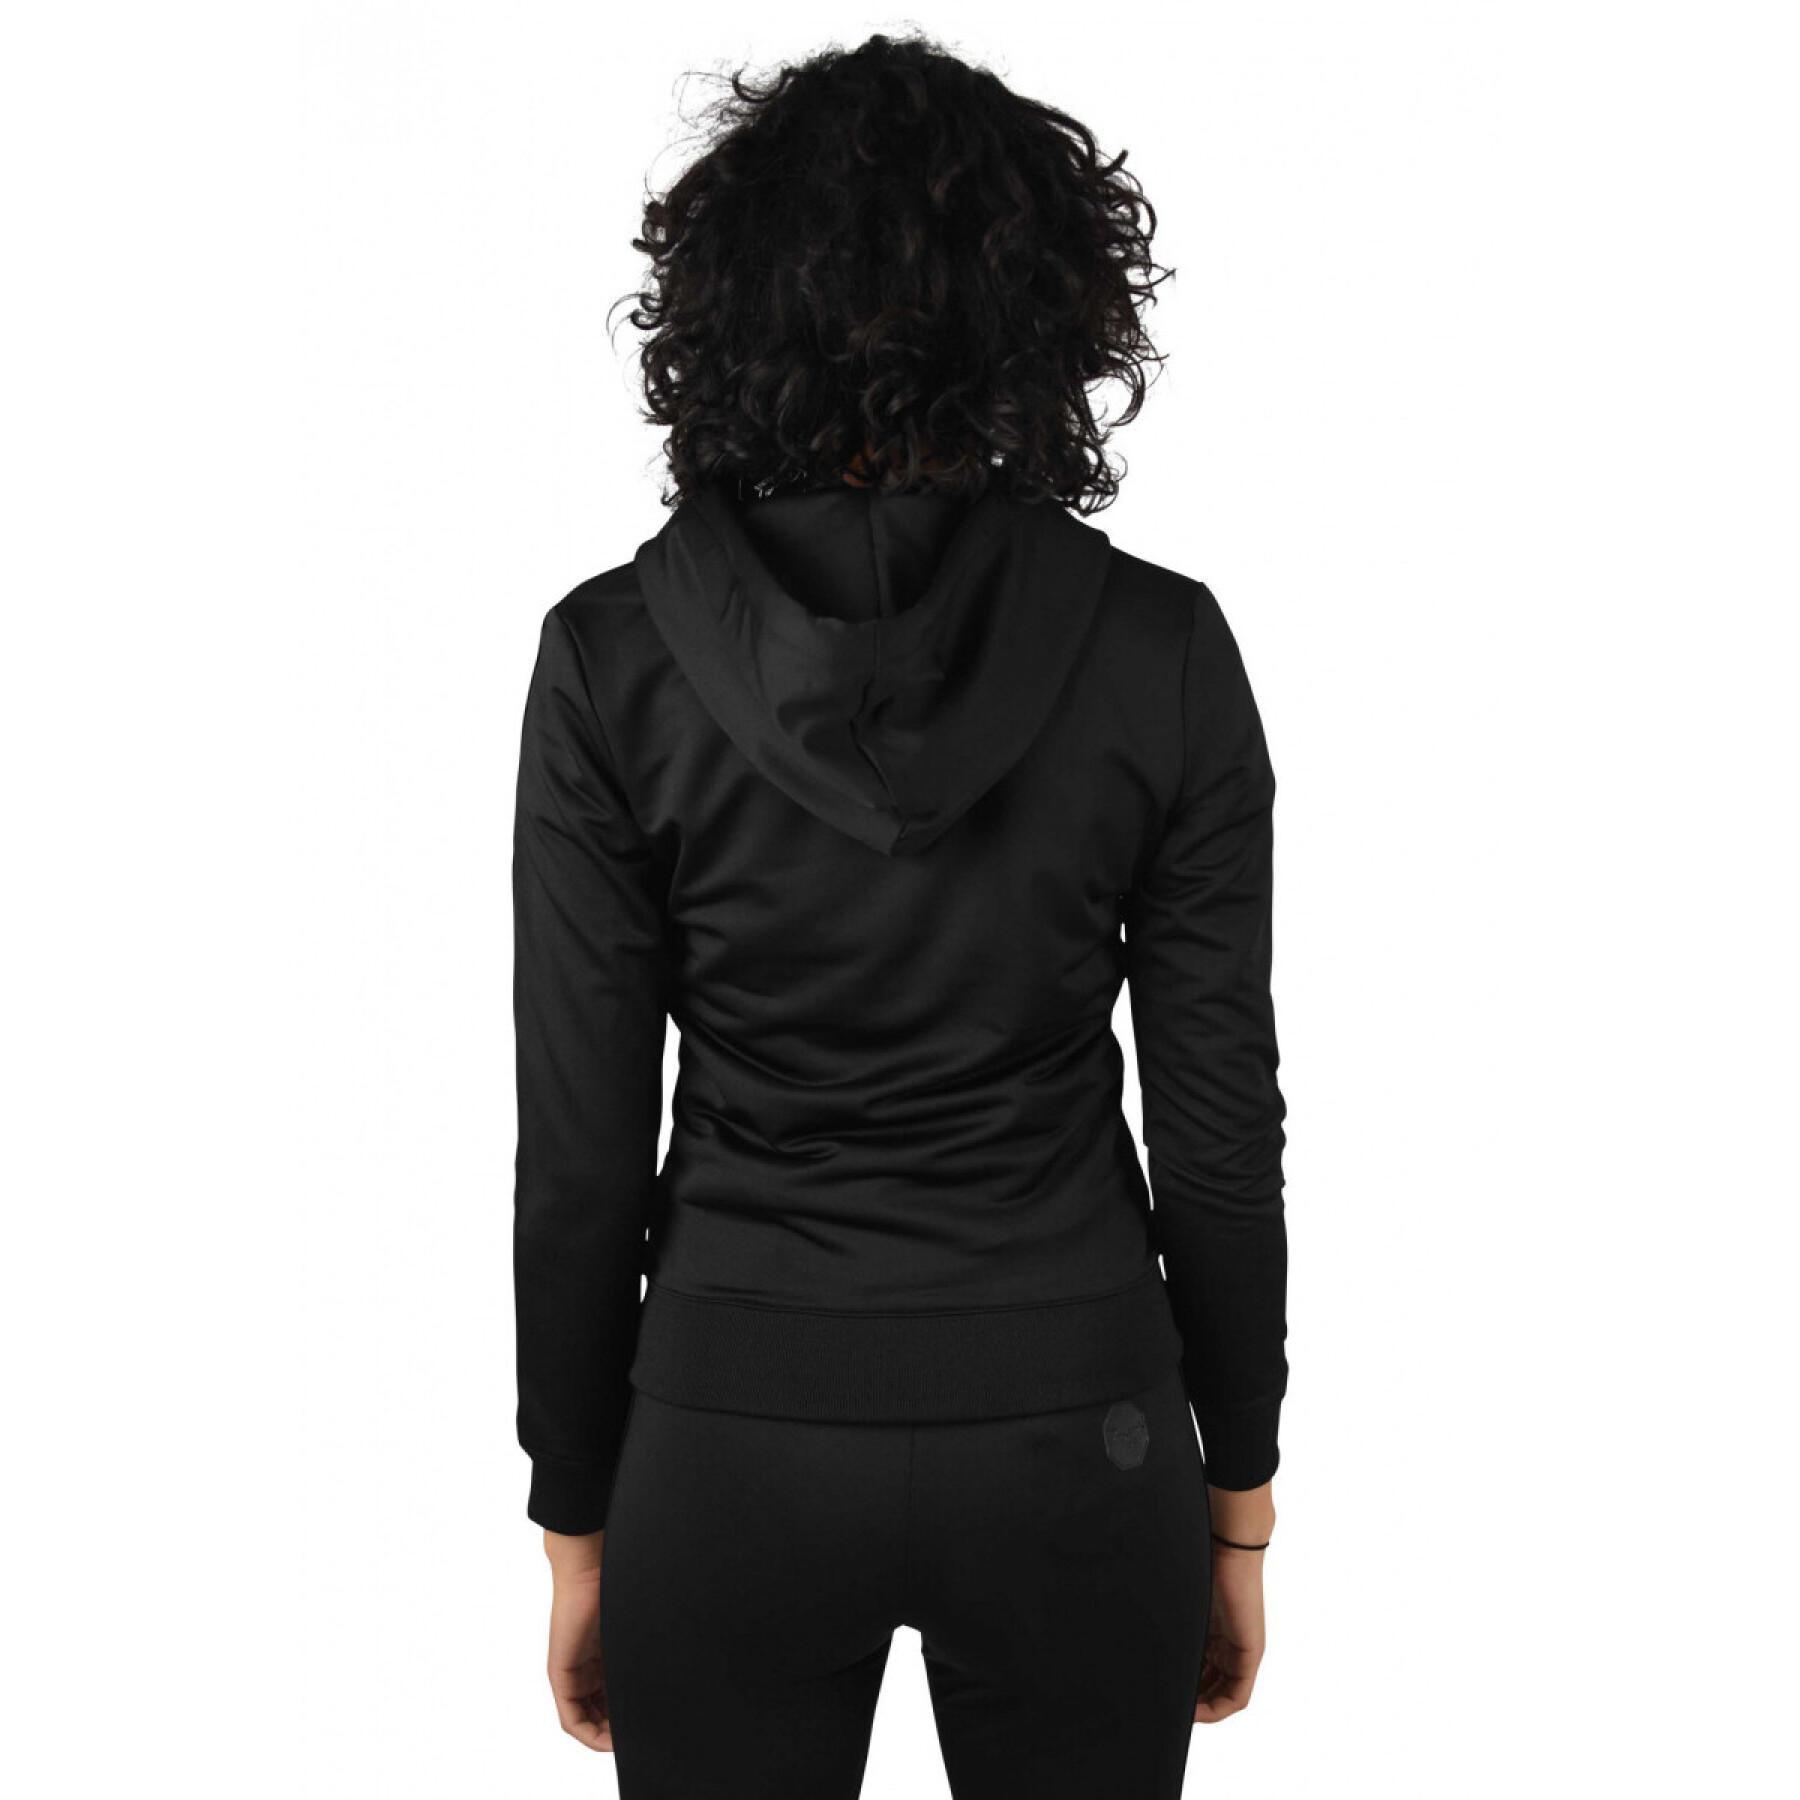 Sweatshirt encapuzado com riscas nas laterais para mulheres Project X Paris